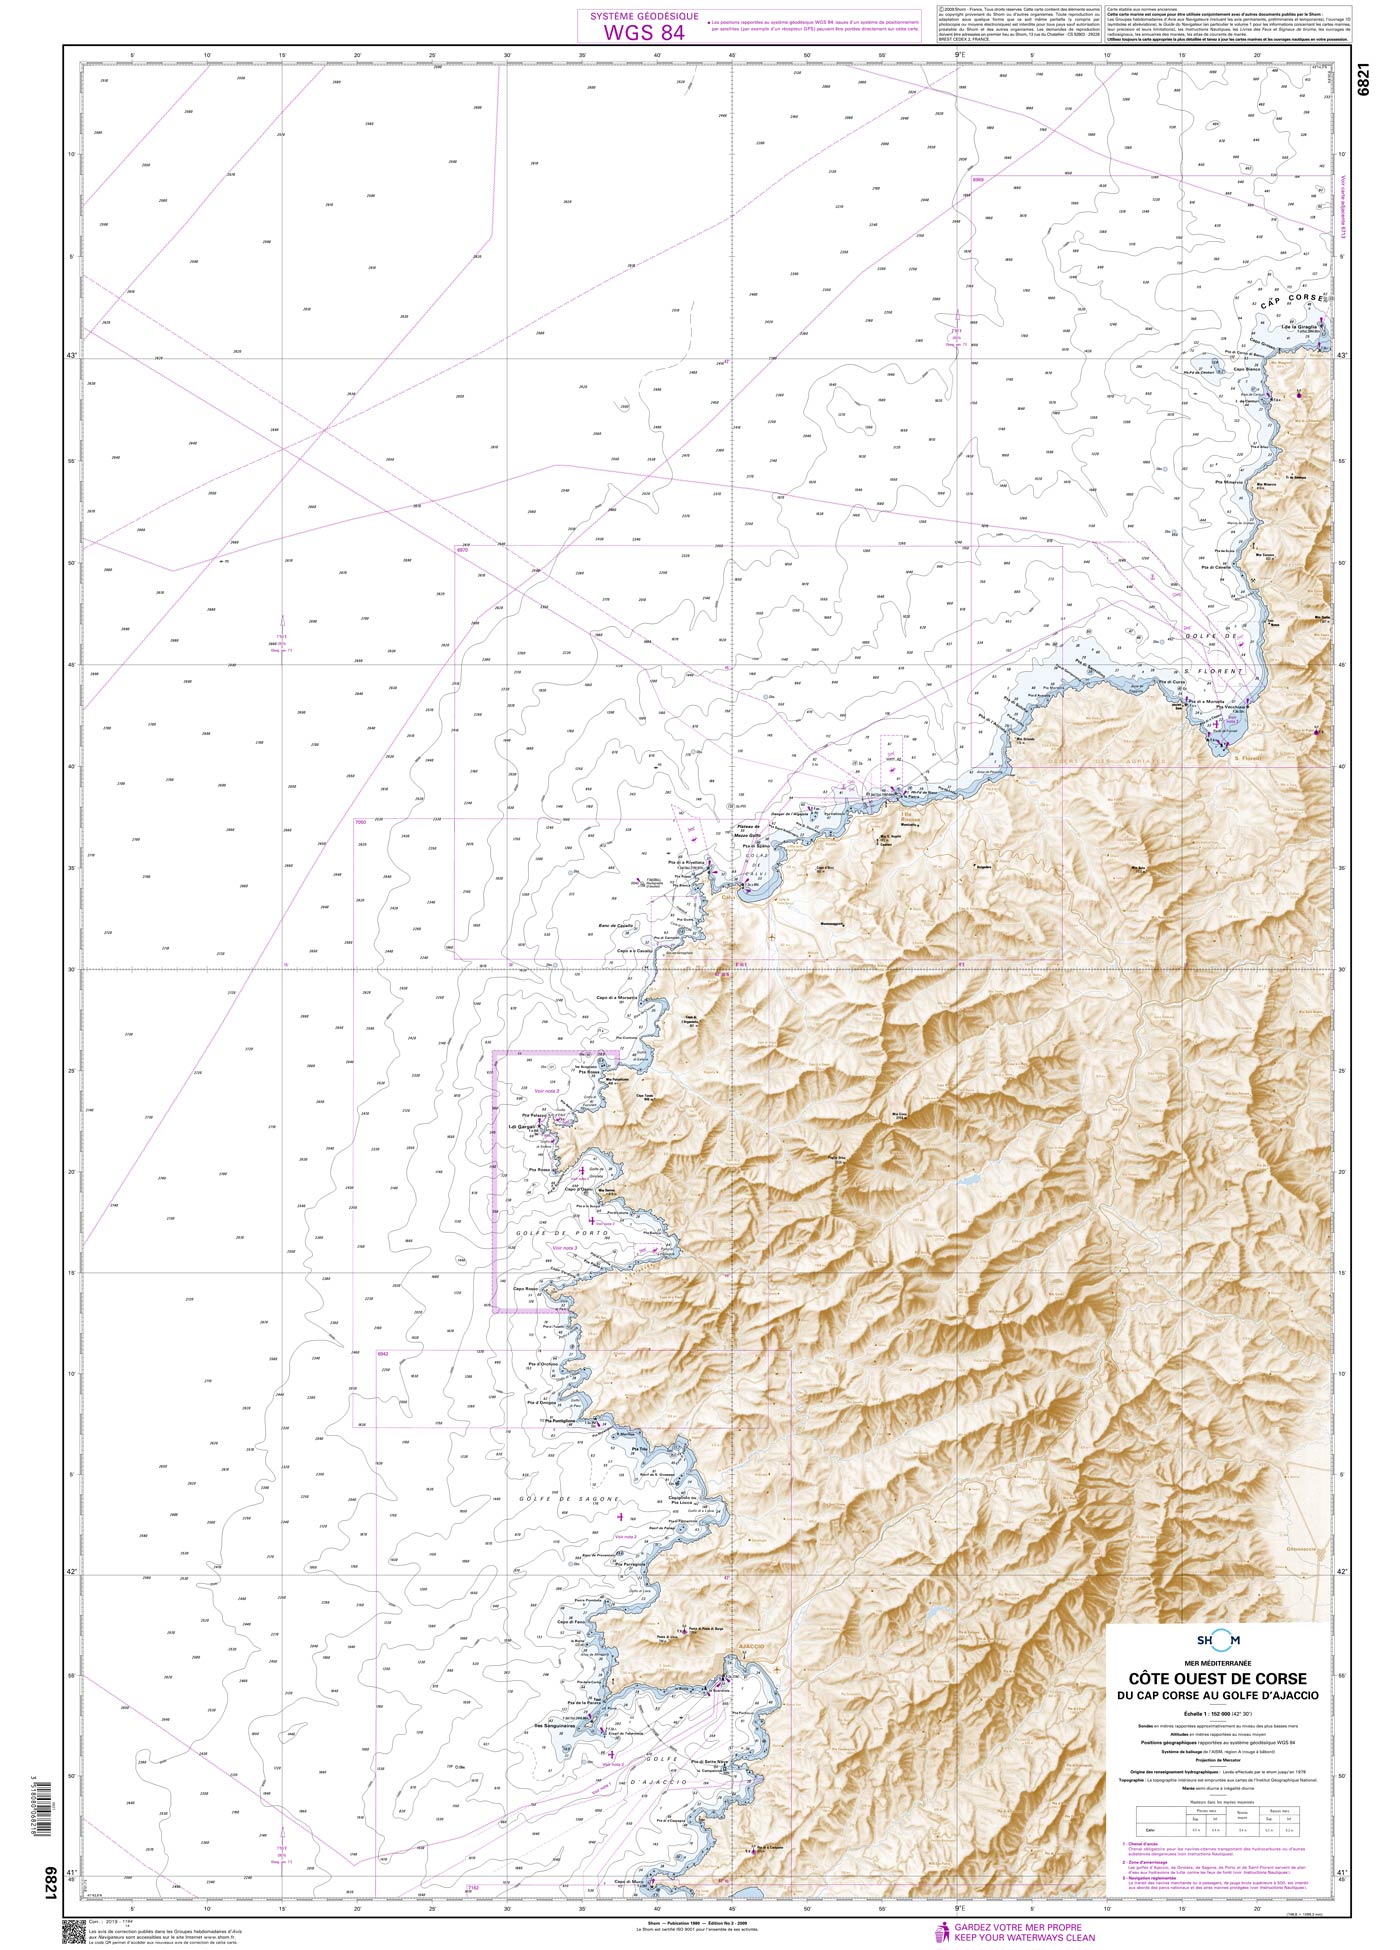 Shom 6821 - Côte Ouest de Corse - Du Cap Corse au Golfe d'Ajaccio